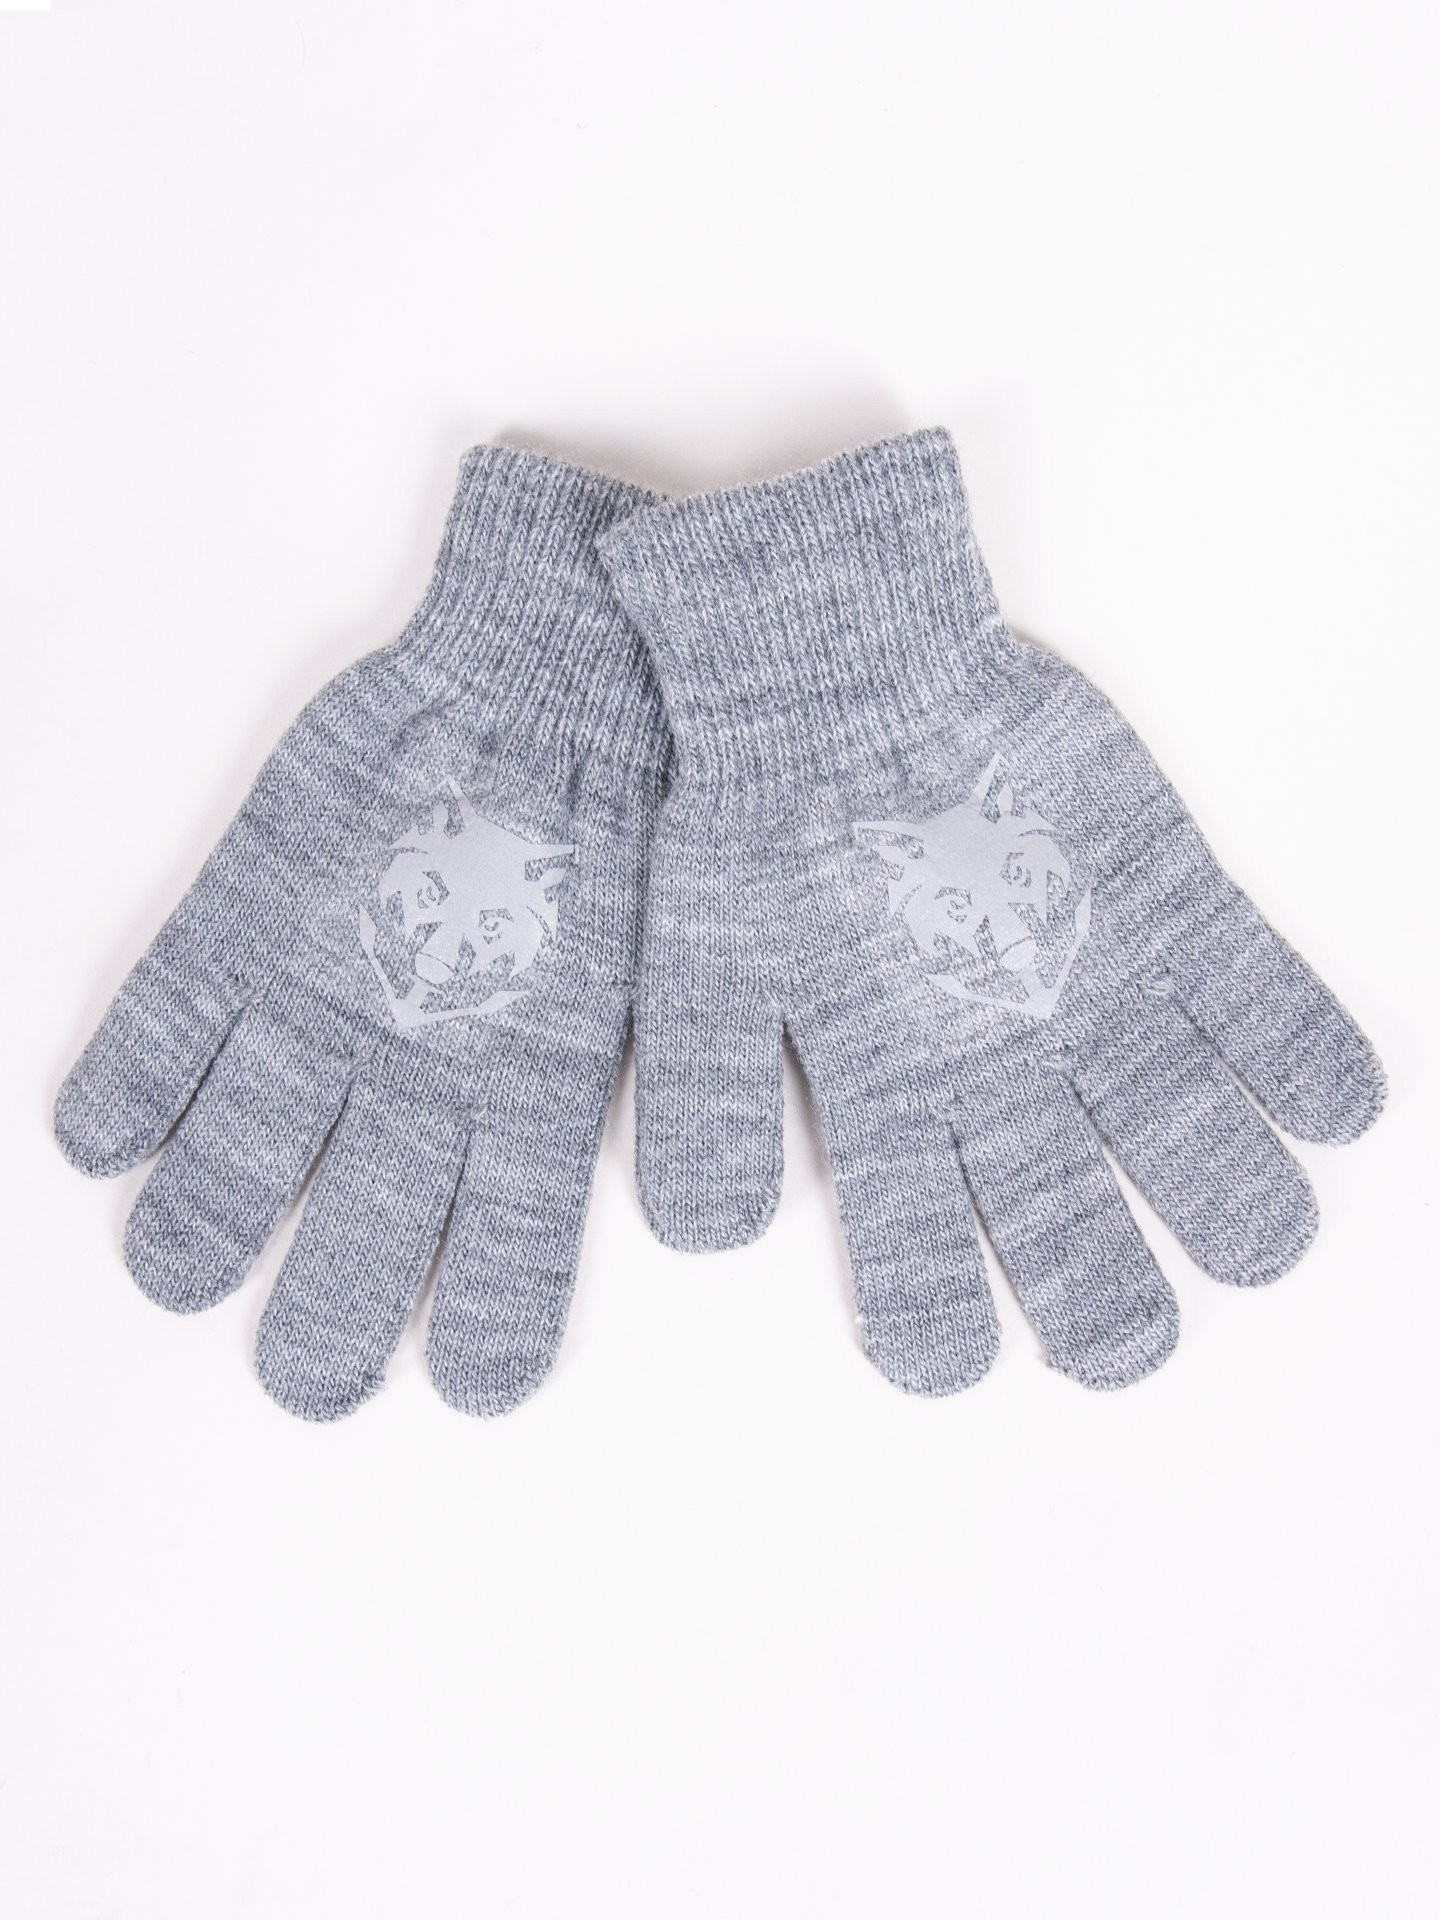 Chlapecké pětiprsté rukavice Yoclub s reflexními prvky RED-0237C-AA50-003 Grey 18